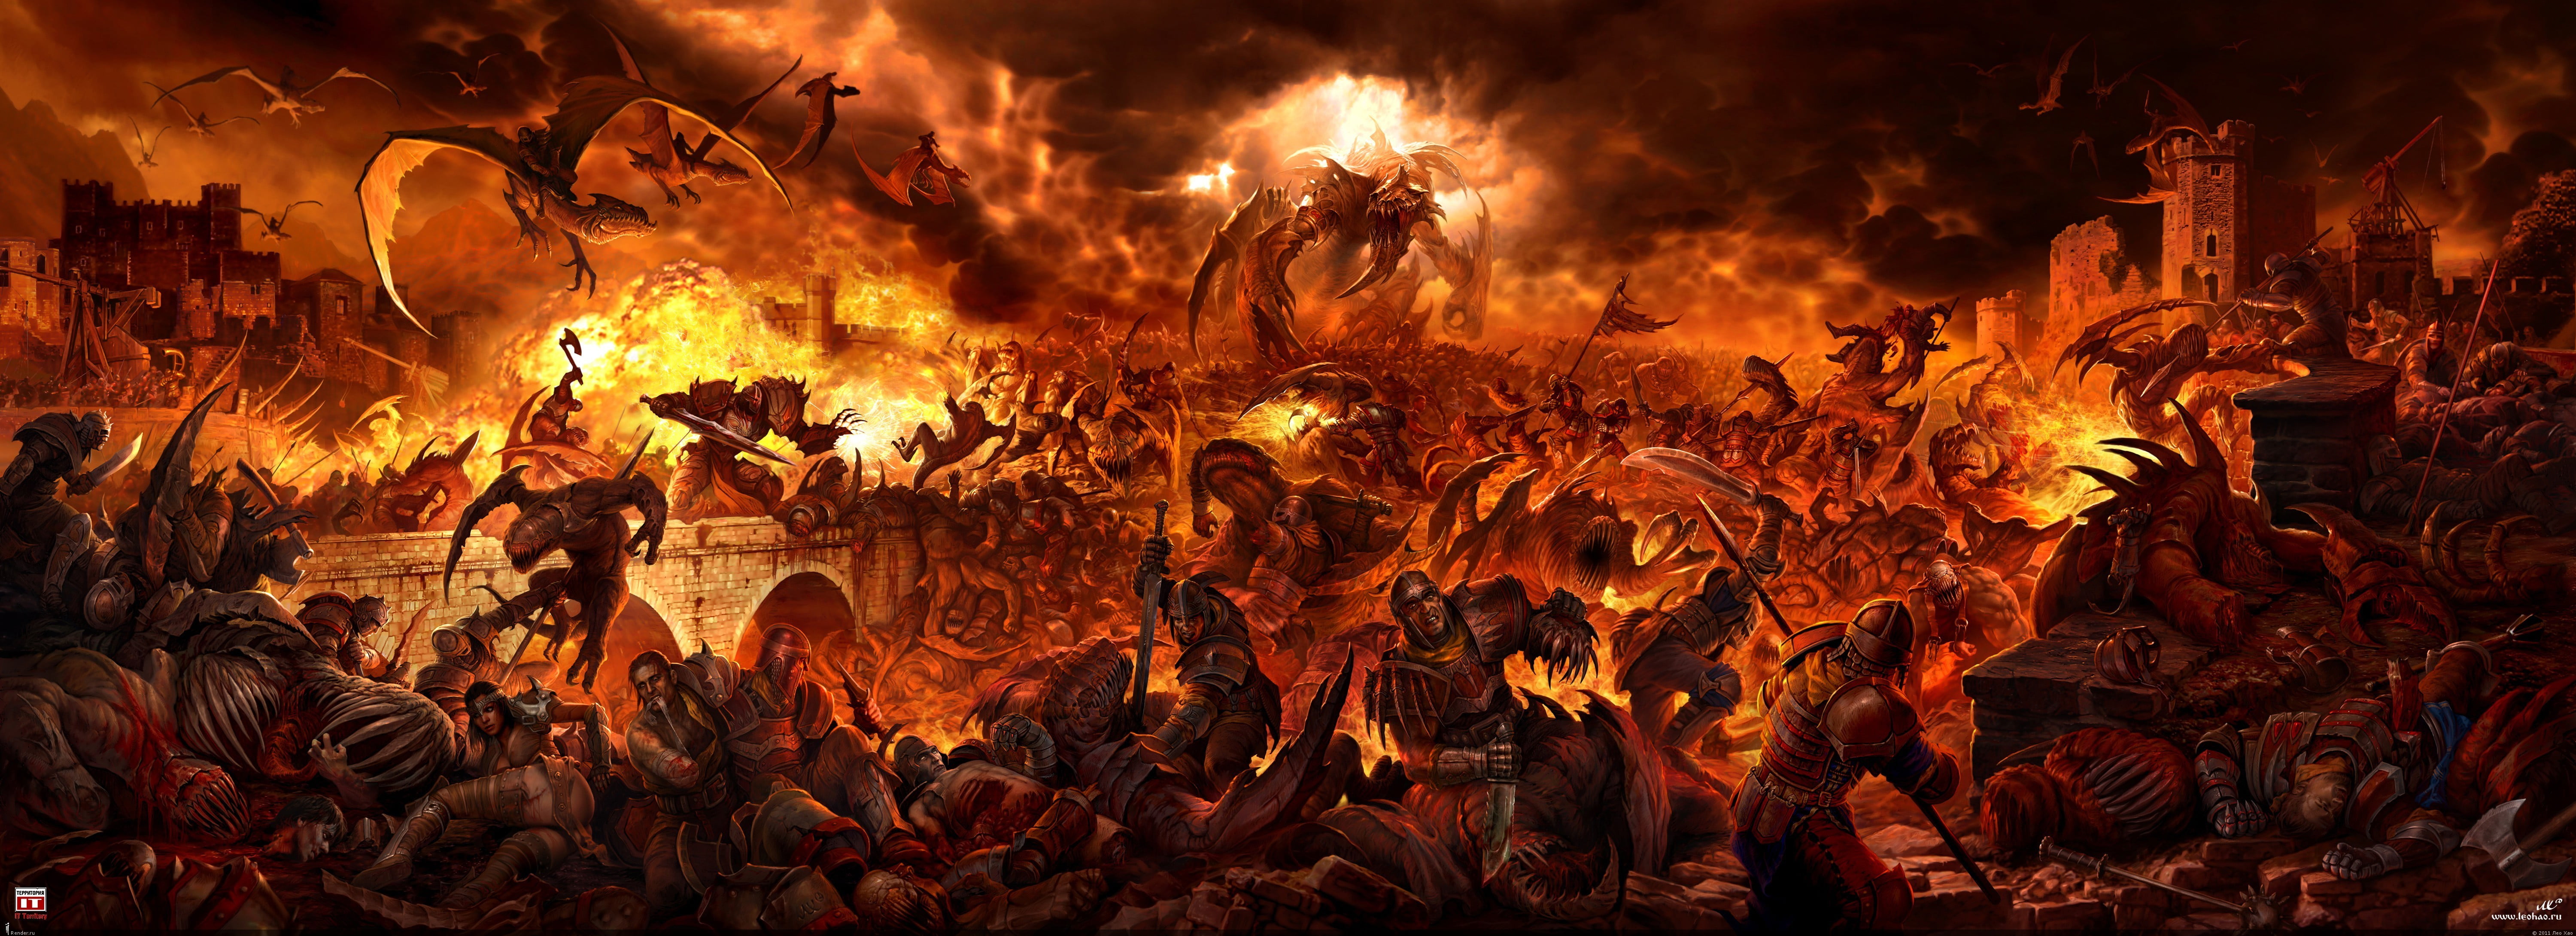 war with dragons digital artwork, fantasy art, digital art, hell